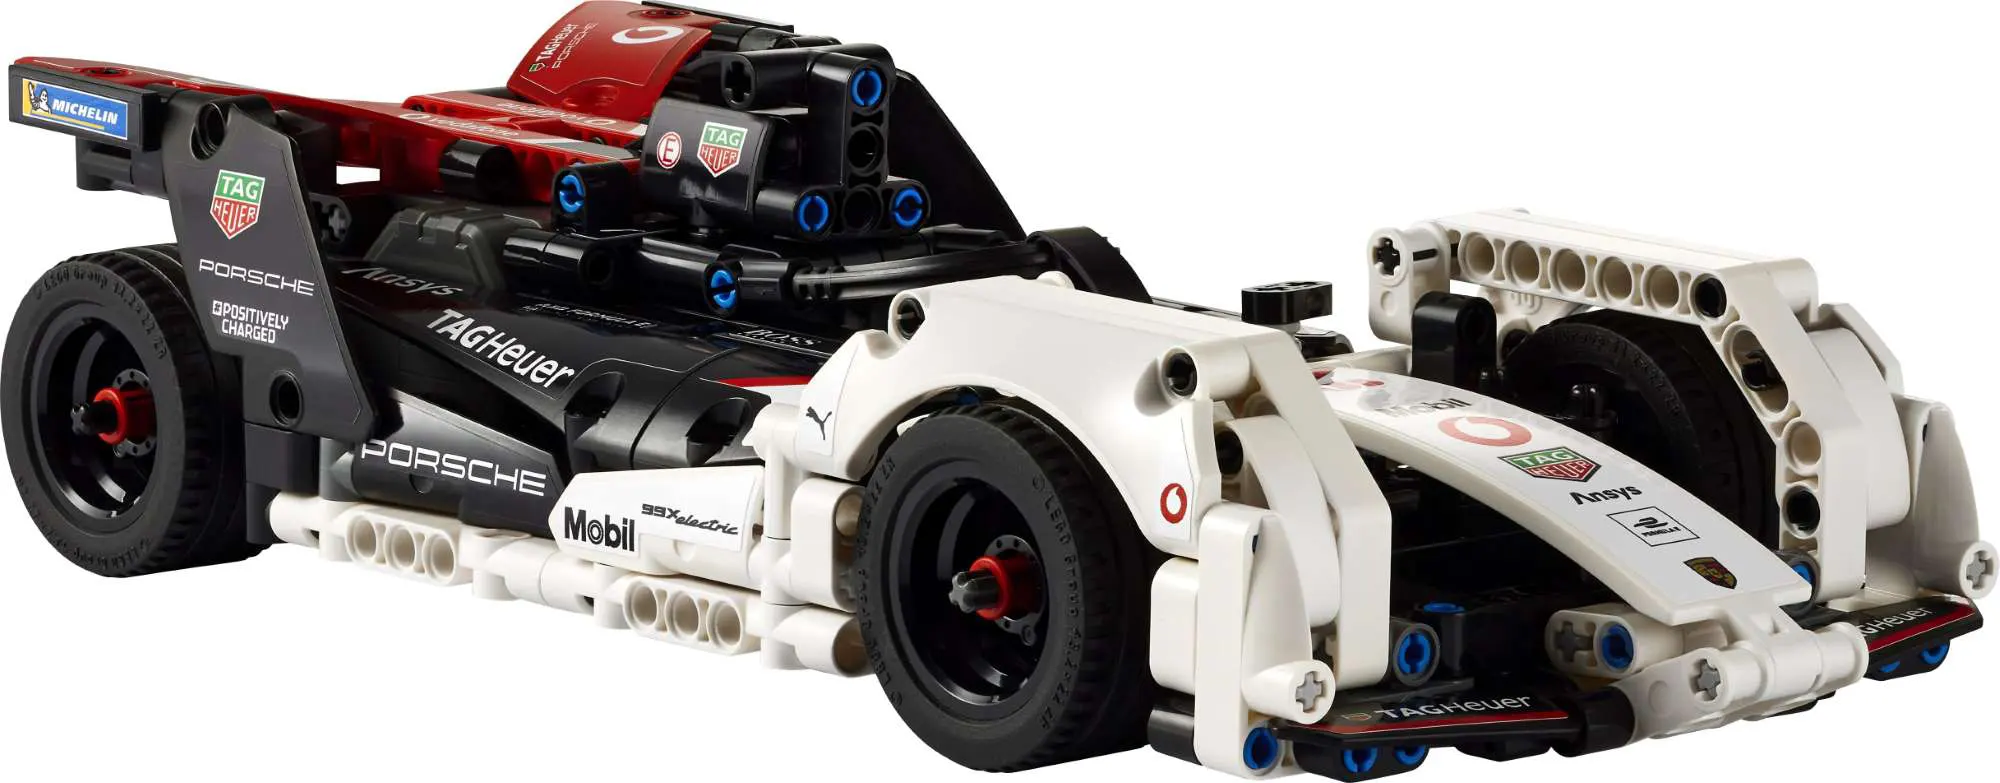 LEGO Technic New Sets for Jan. 1st 2022 Revealed | Batmobile, Monster Jam and more